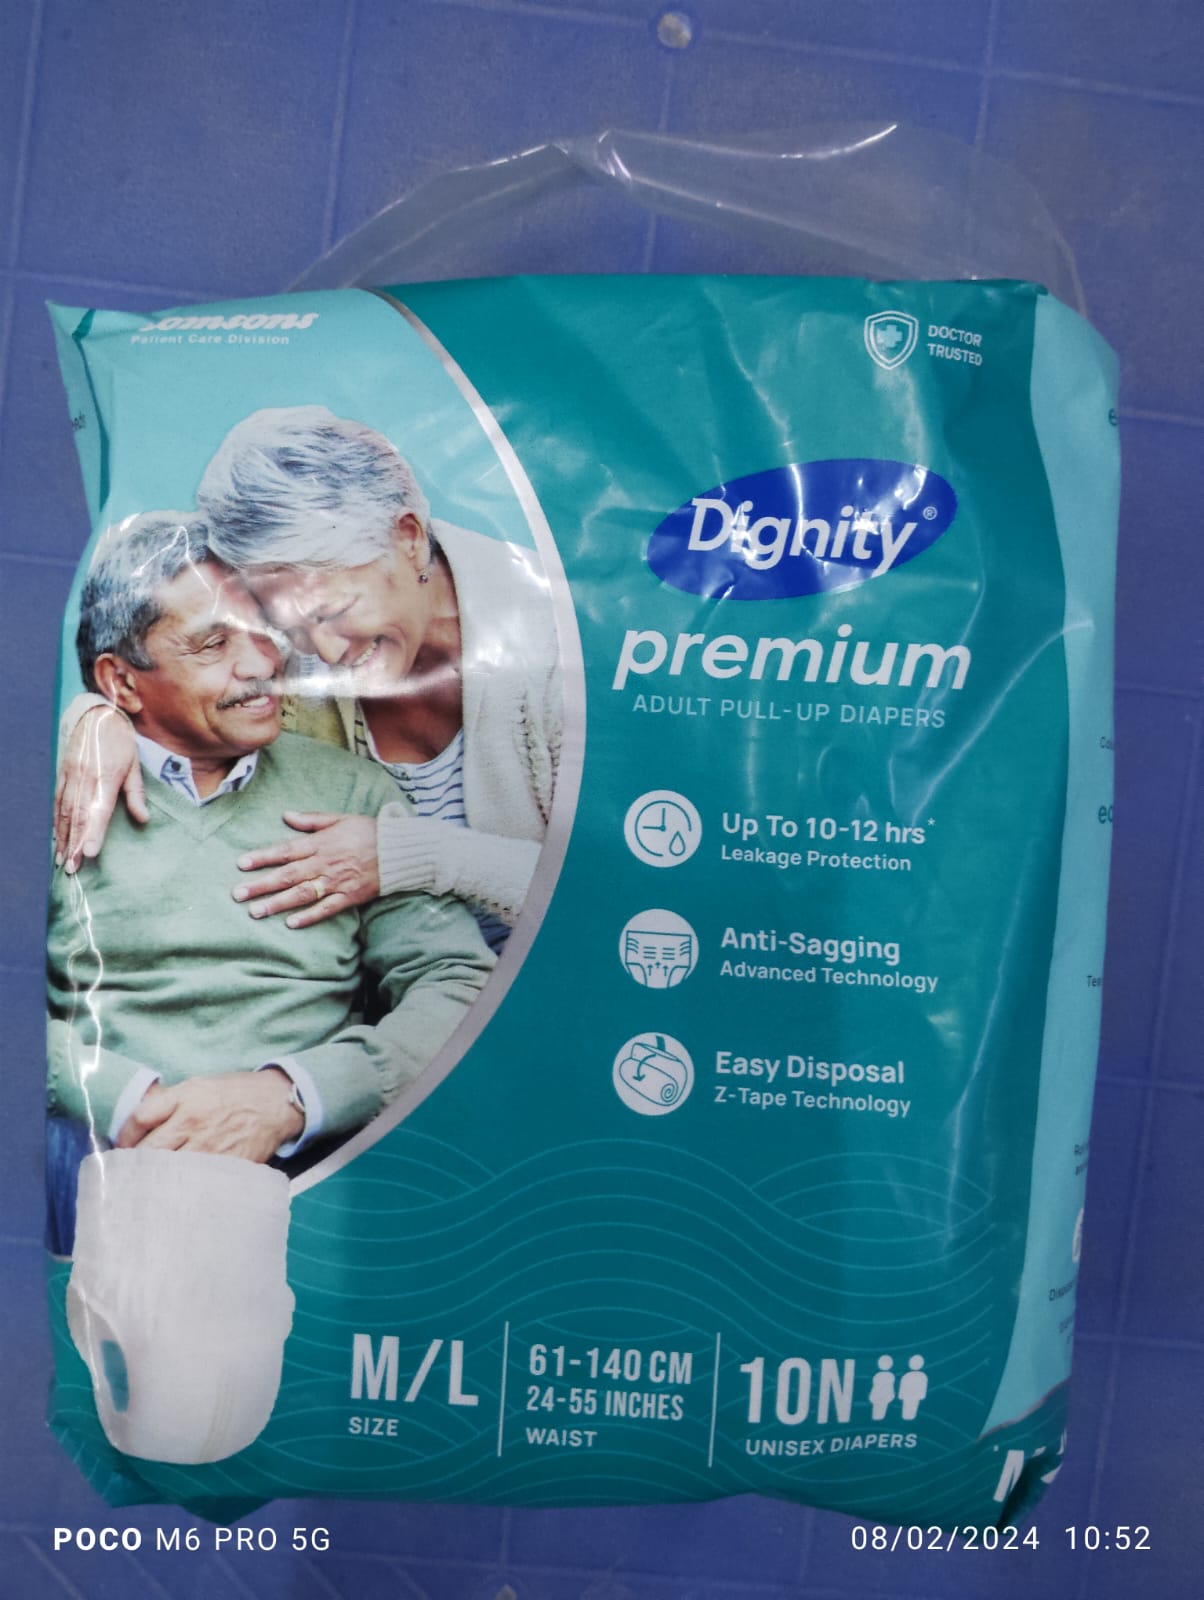 Buy original Romsons Dignity Premium Pull Up Adult Diapers (M-L